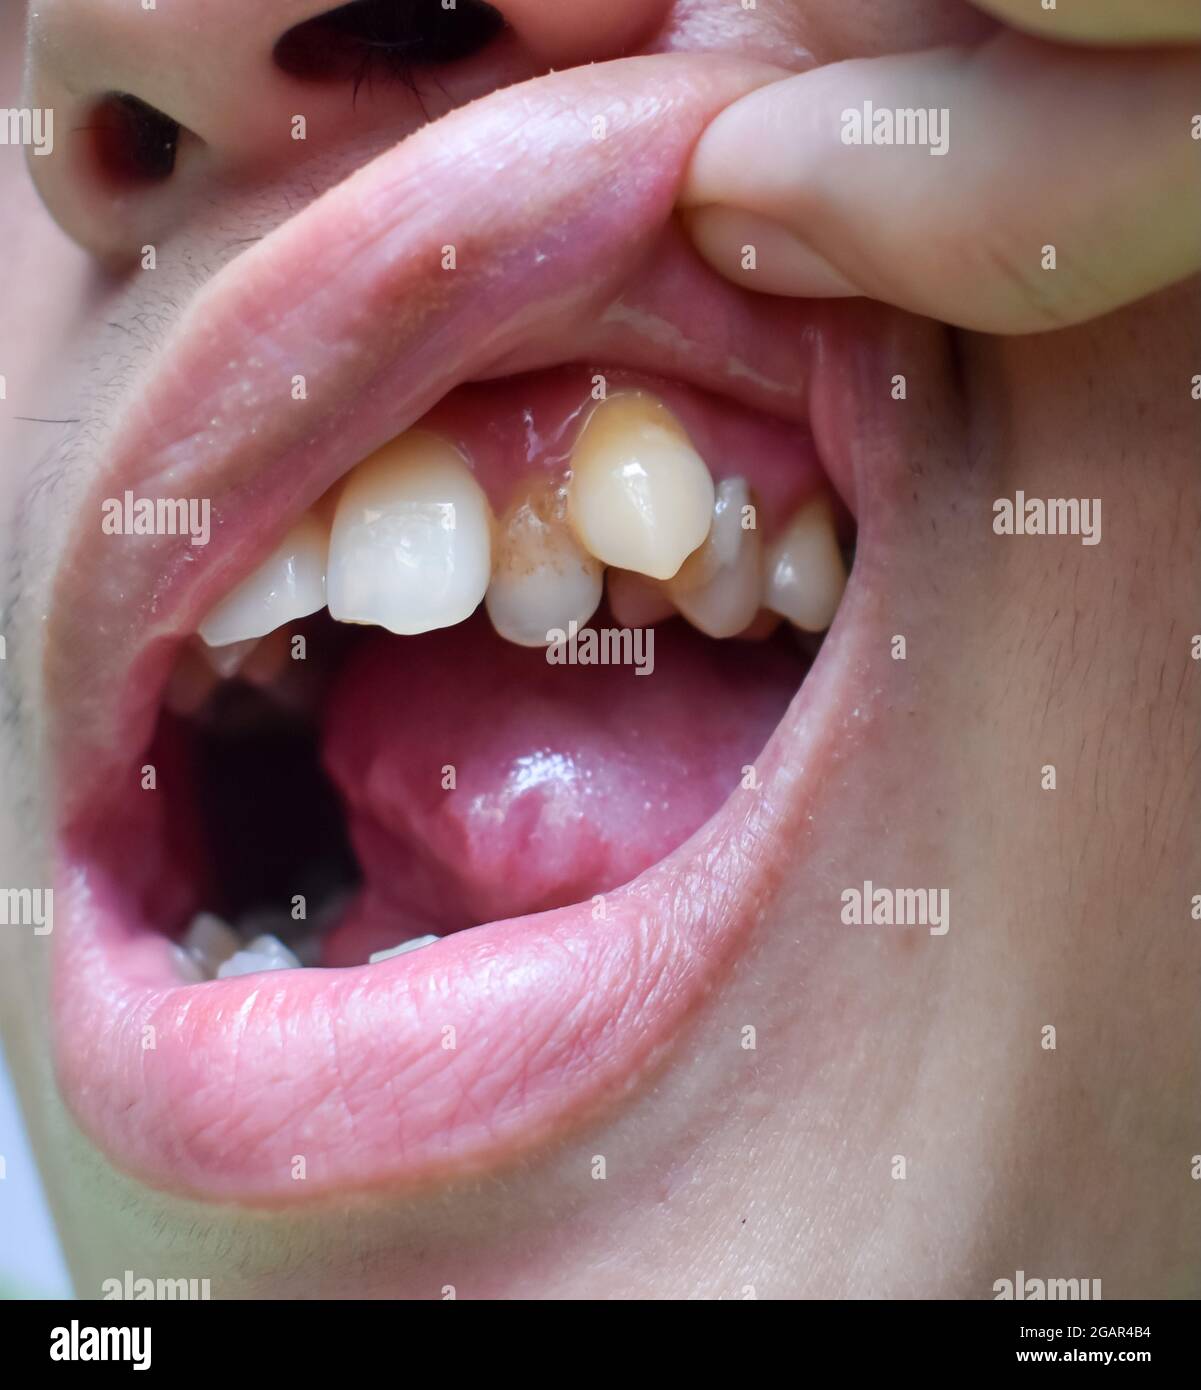 Malokklusion, Überfüllung der oberen Zähne einschließlich Eckzähne bei südostasiatischem, chinesischem jungen Mann. Stockfoto